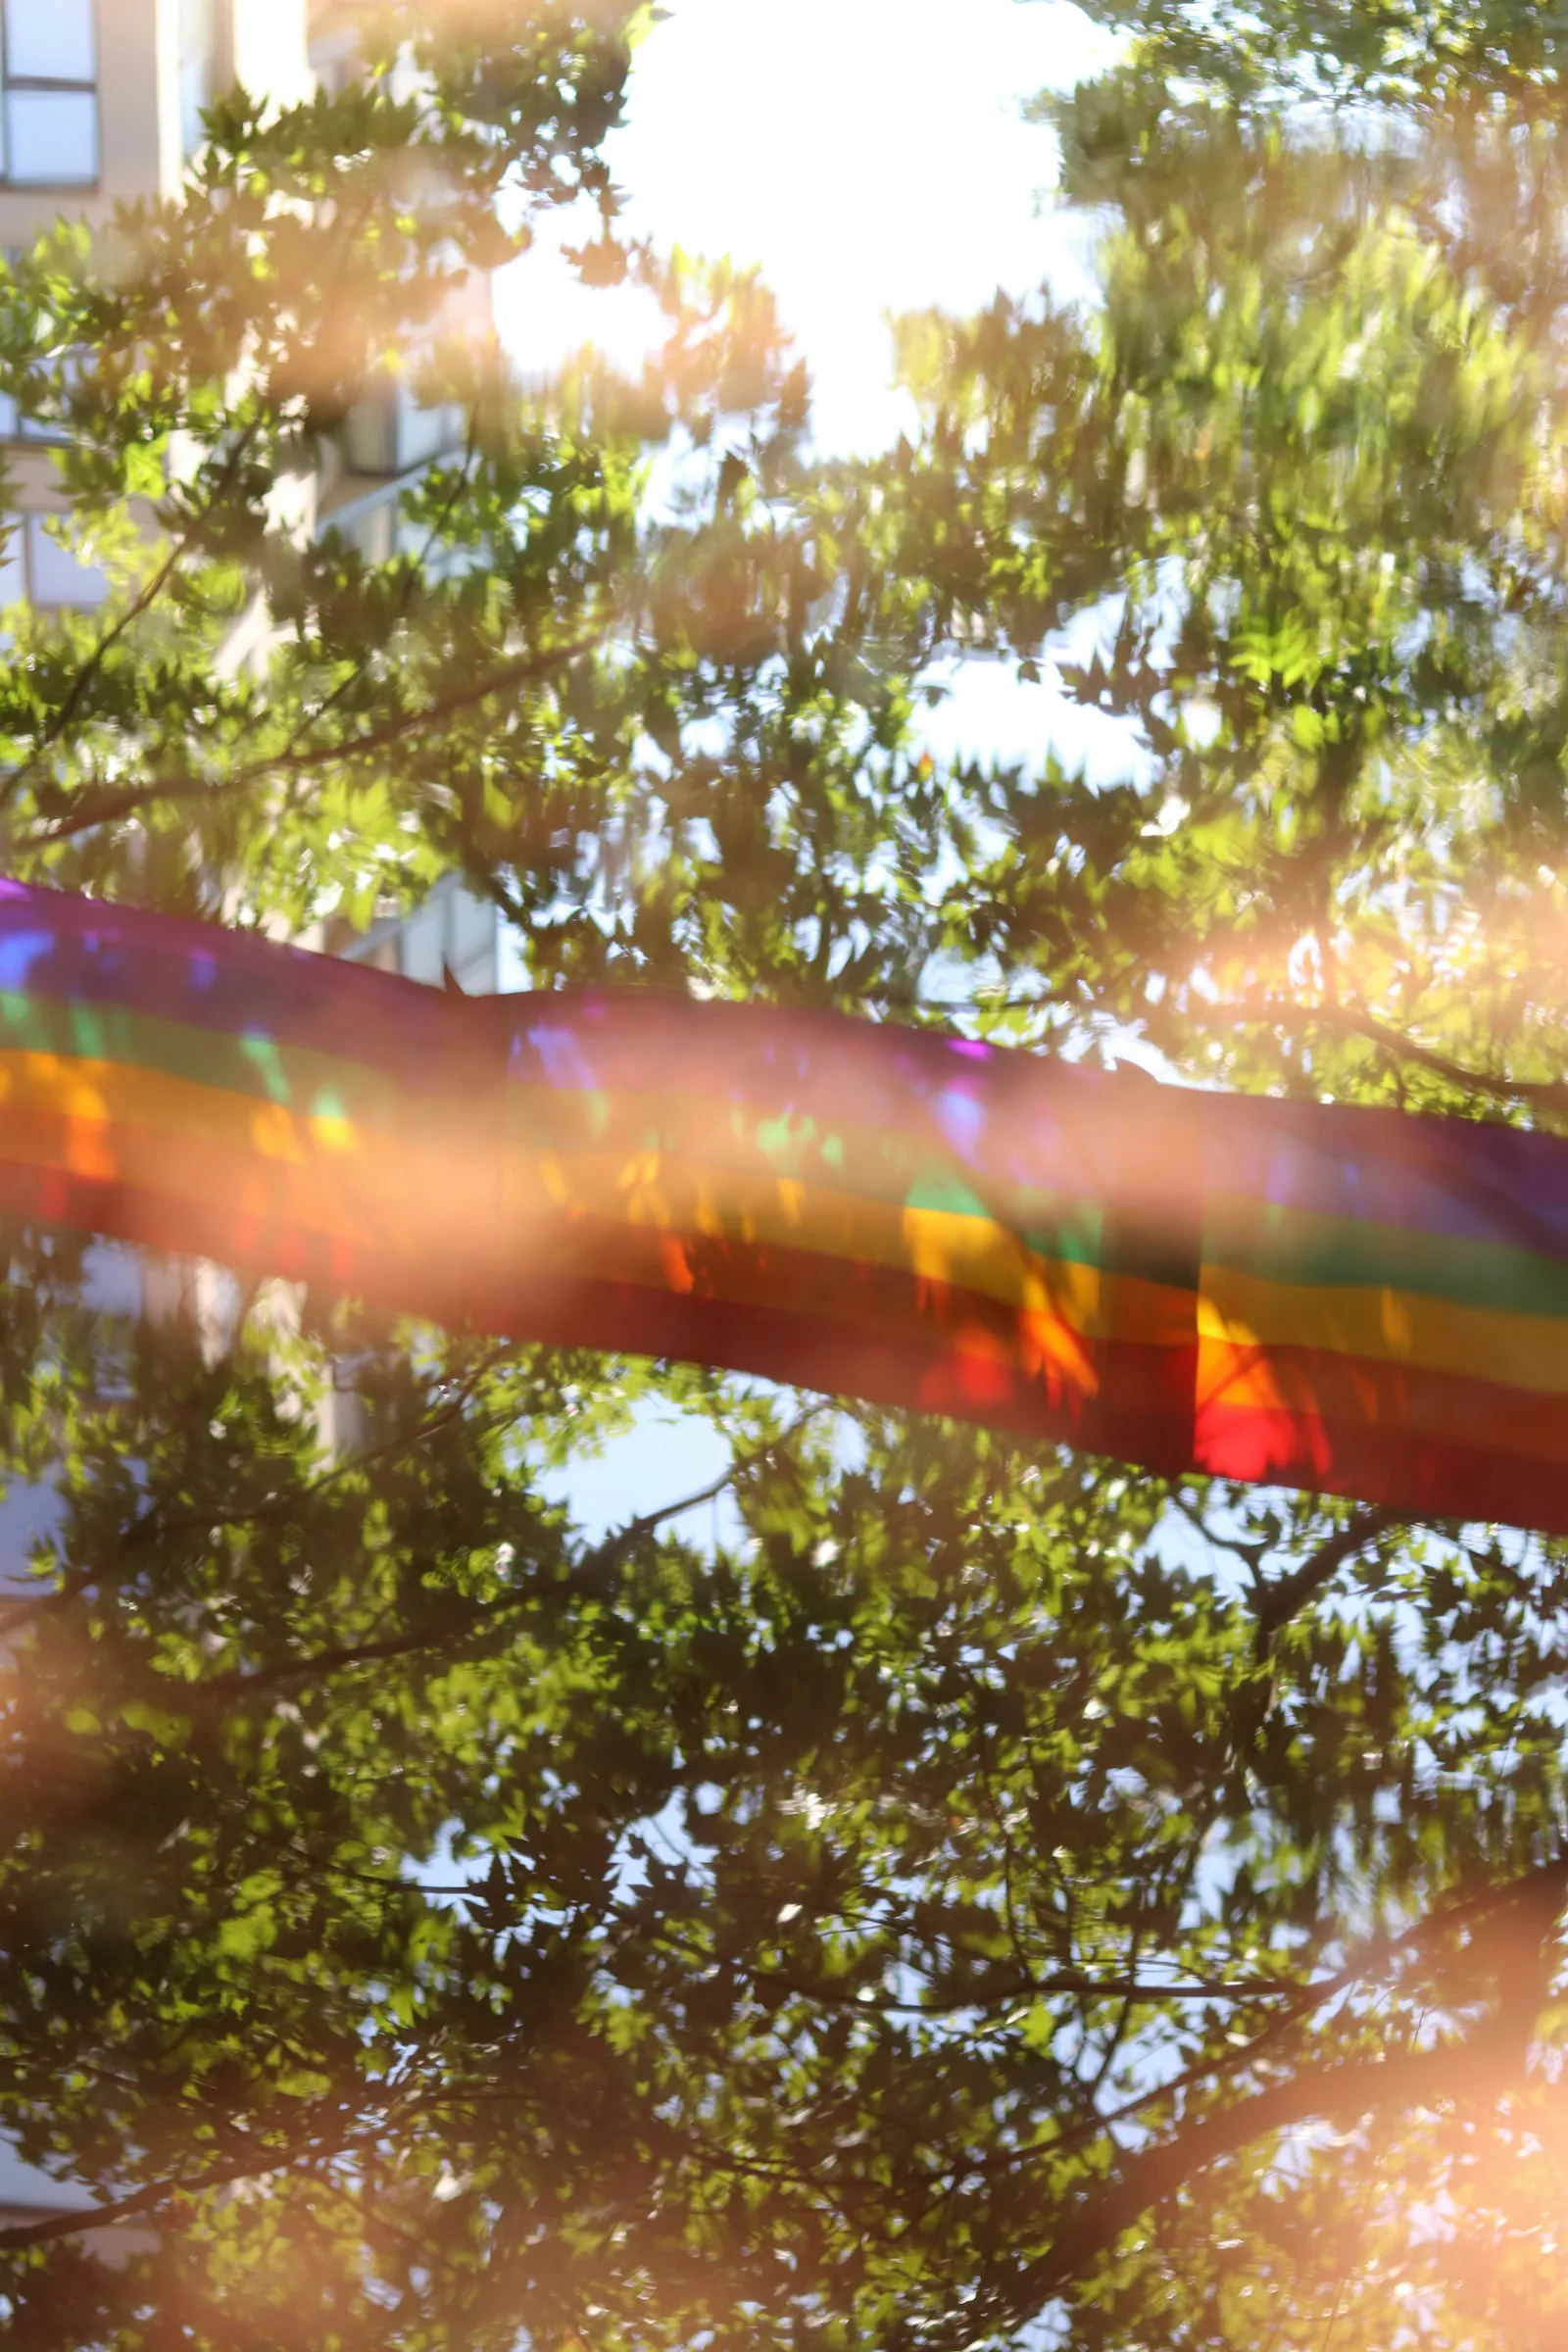 Mehrere miteinander verbundene Regenbogenflaggen aufgespannt vor einem blauen Himmel und grünen Bäumen.